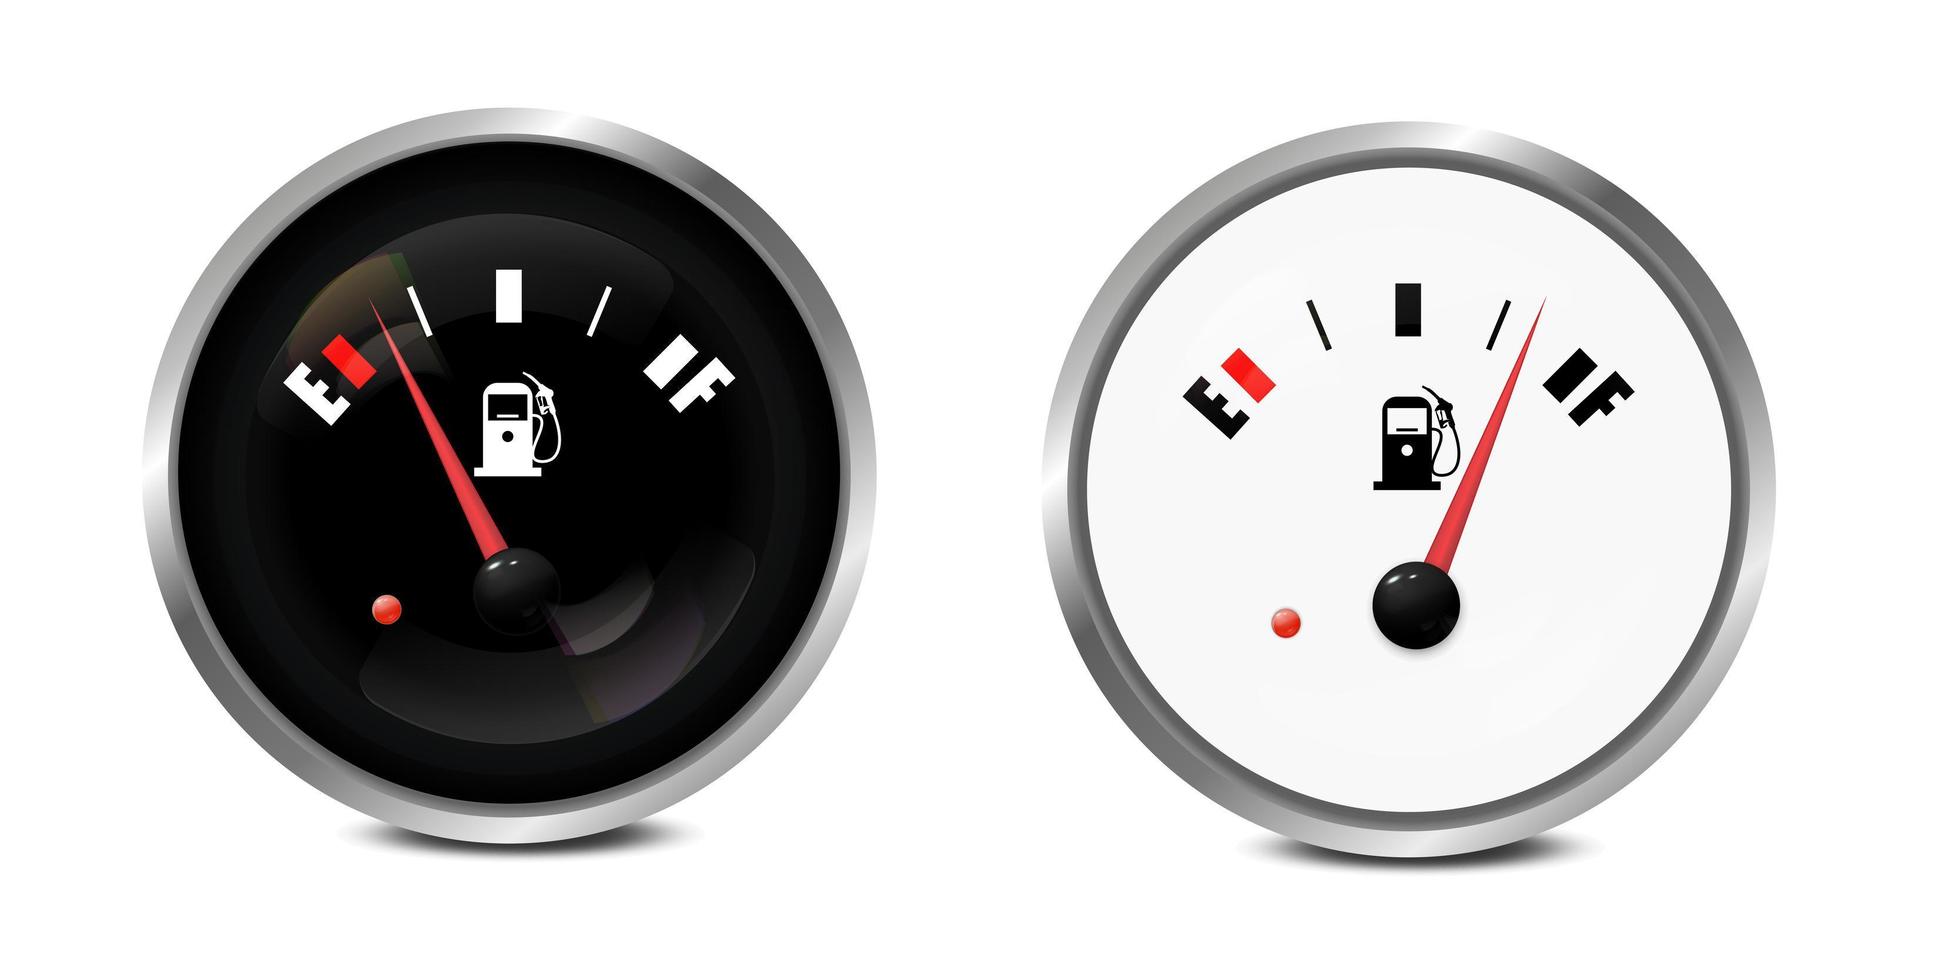 vecteur 3d réaliste cercle noir et blanc jauge de réservoir de carburant à gaz, jeu d'icônes de barre de niveau d'huile isolé sur fond blanc. détails du tableau de bord de la voiture. indicateur de carburant, compteur de gaz, capteur. modèle de conception